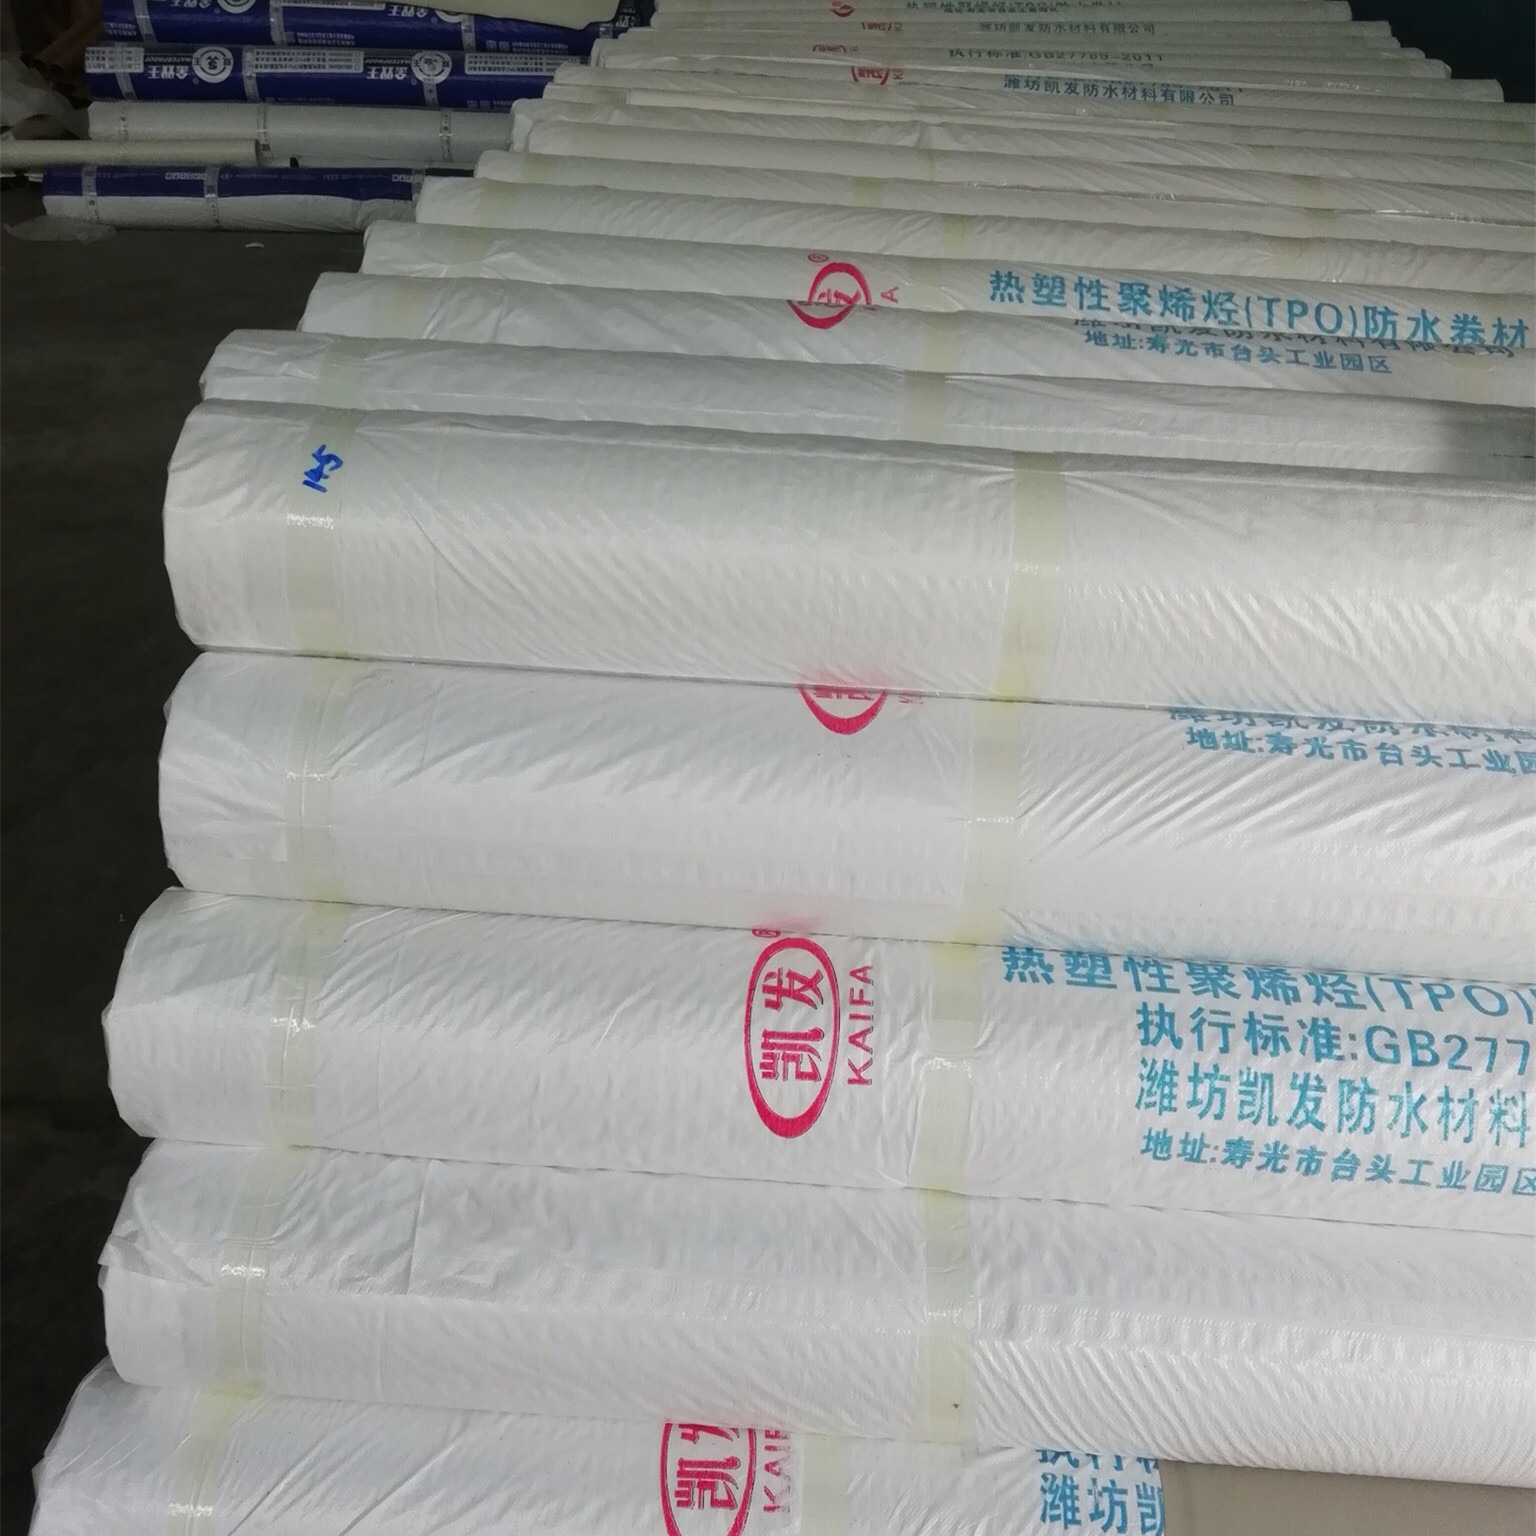 国标认证 tpo防水卷材 热塑性聚烯烃tpo防水卷材 带厂家合格证